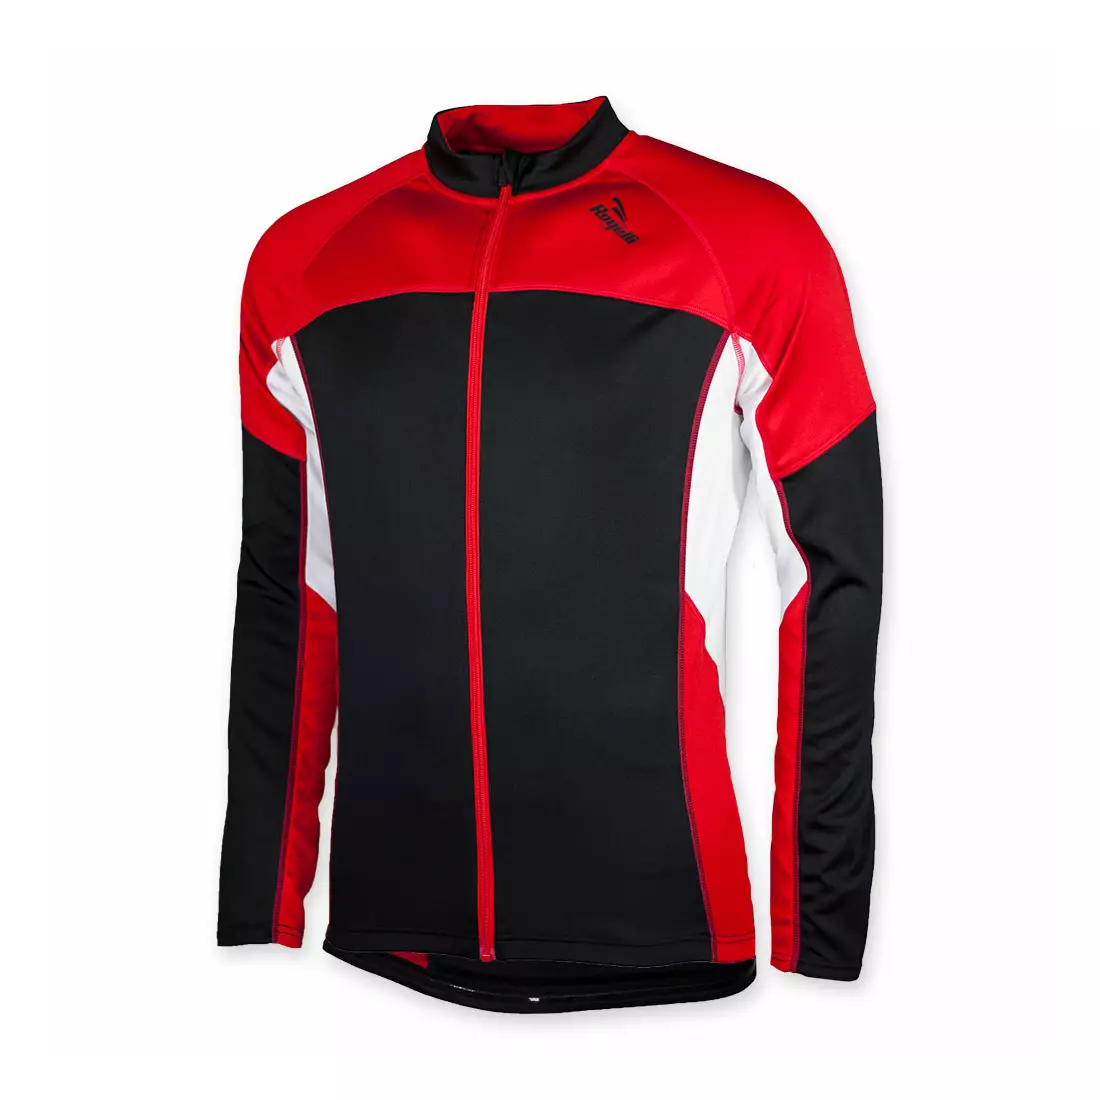 ROGELLI RECCO leicht isoliertes Fahrrad-Sweatshirt, schwarz und rot